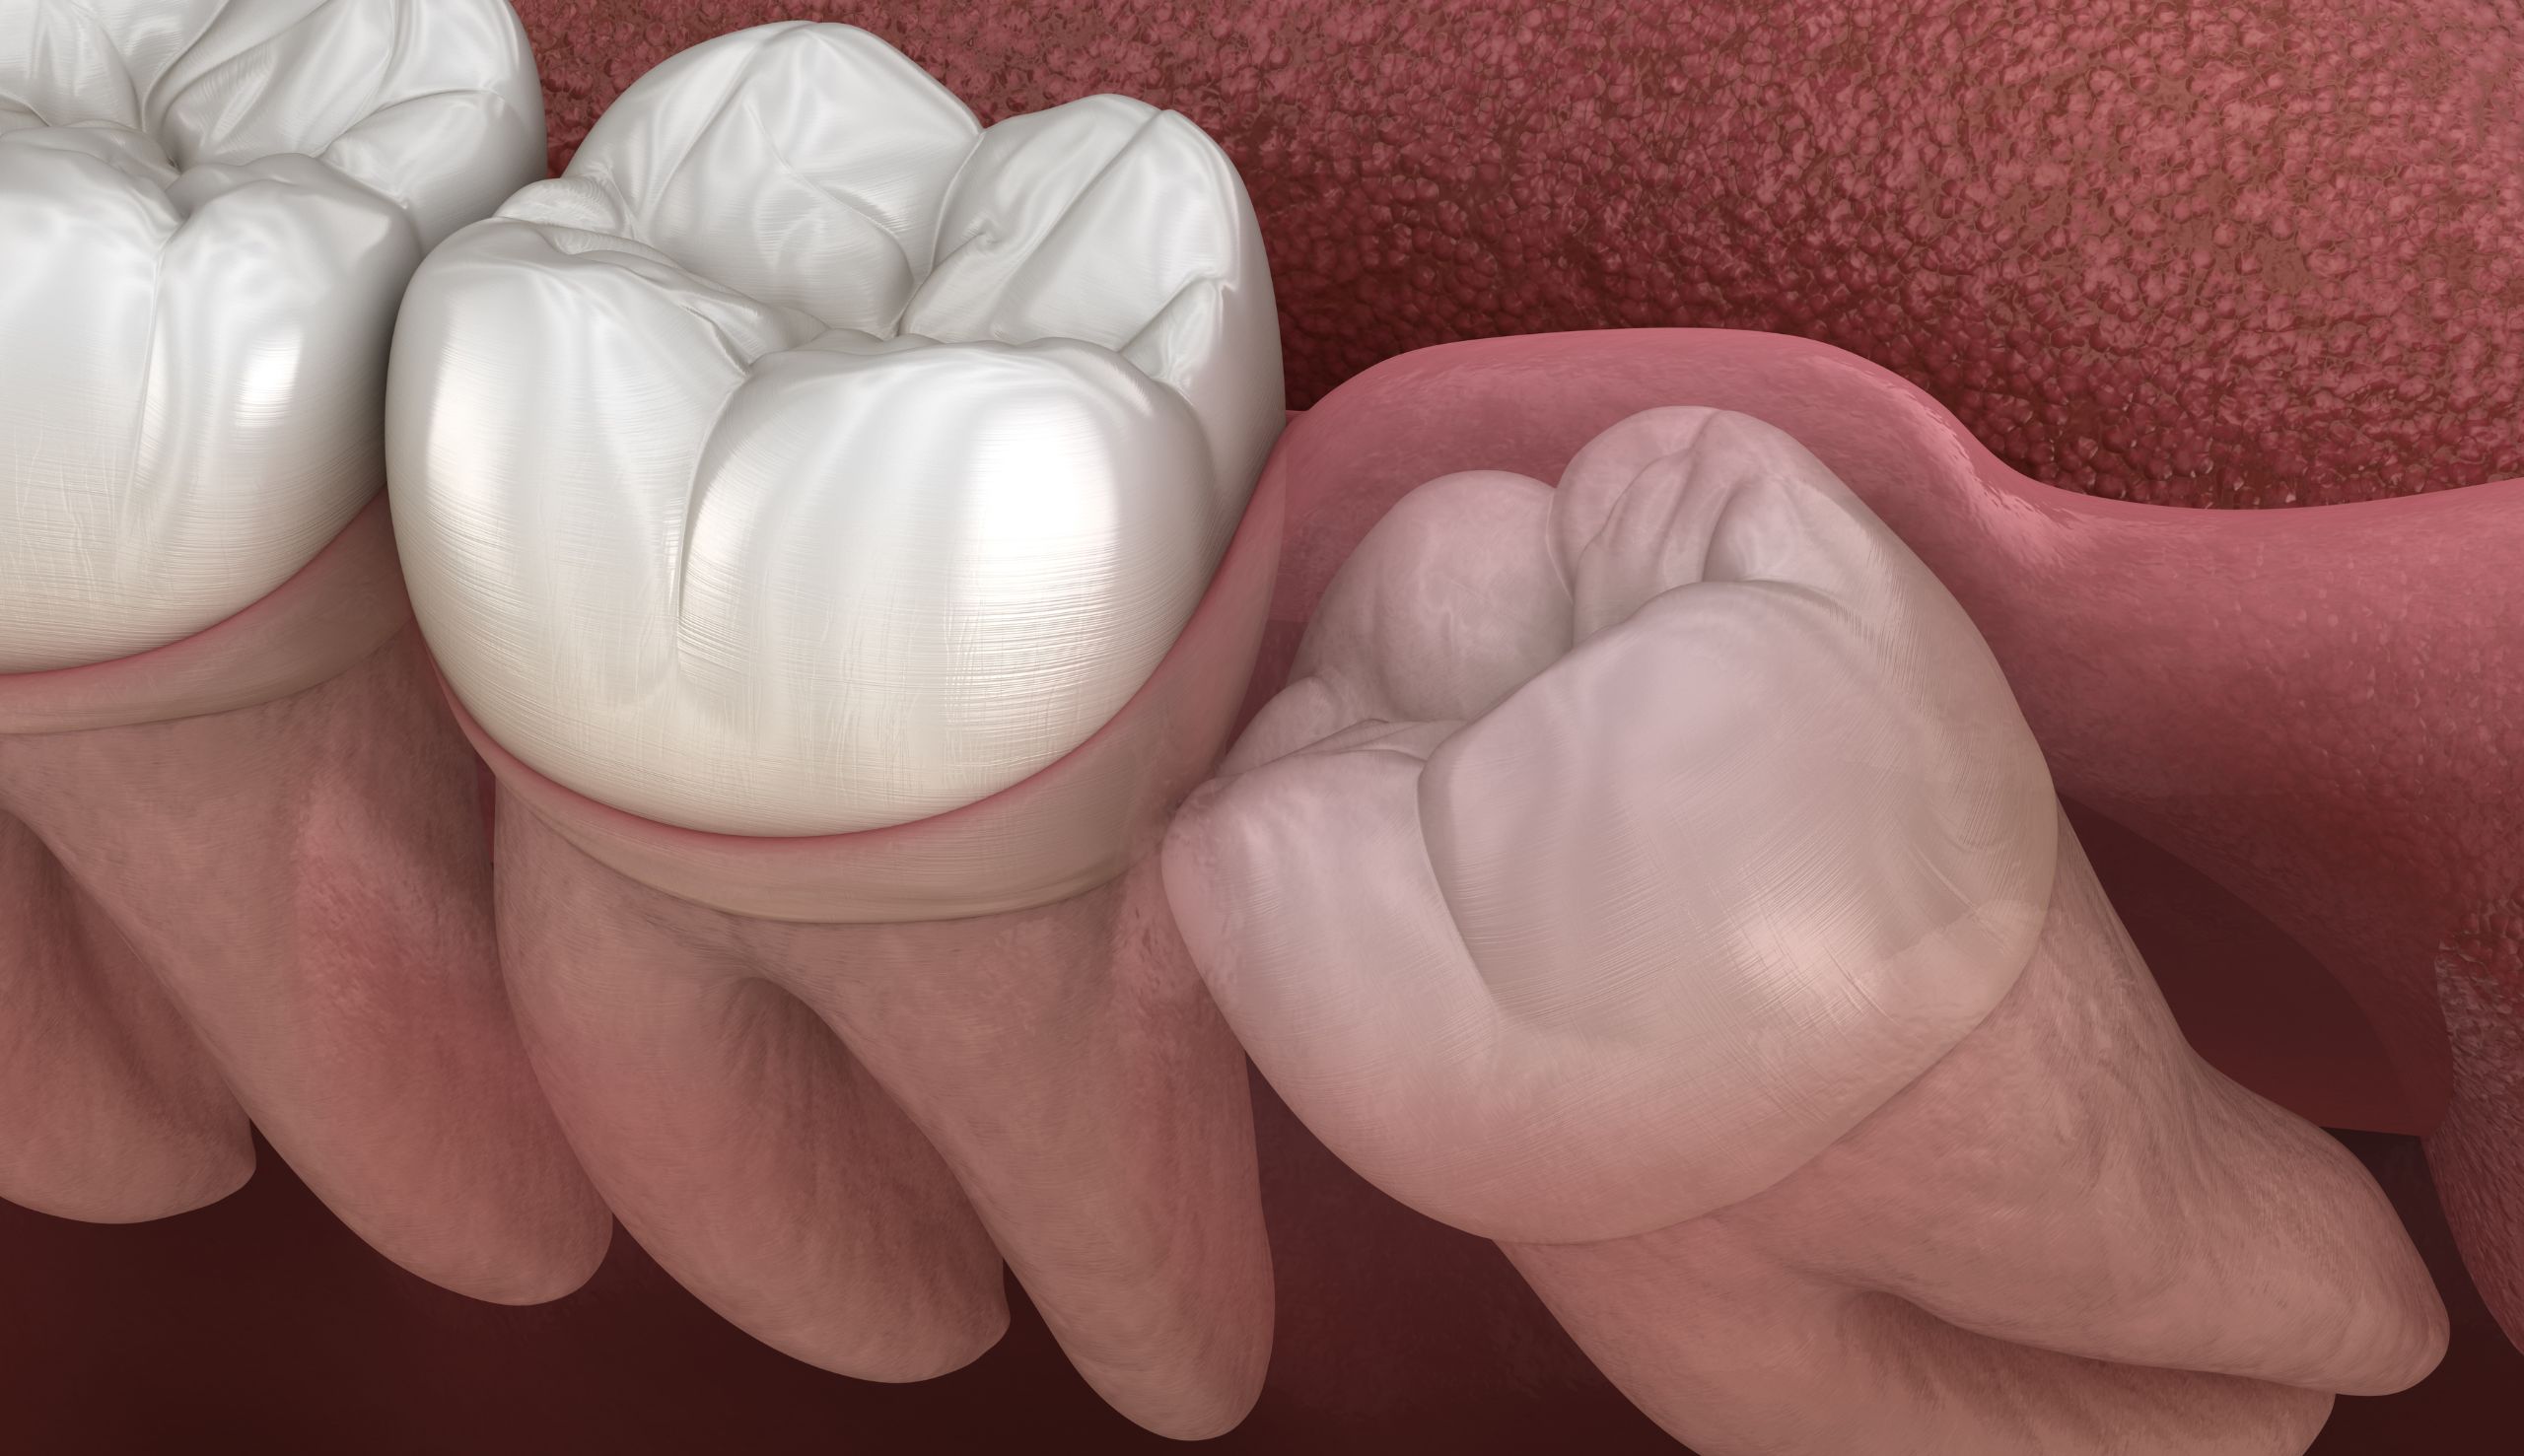 Les dents de sagesse : Pourquoi doivent-elles souvent être extraites ? | Clinique dentaire Sana Oris | Paris